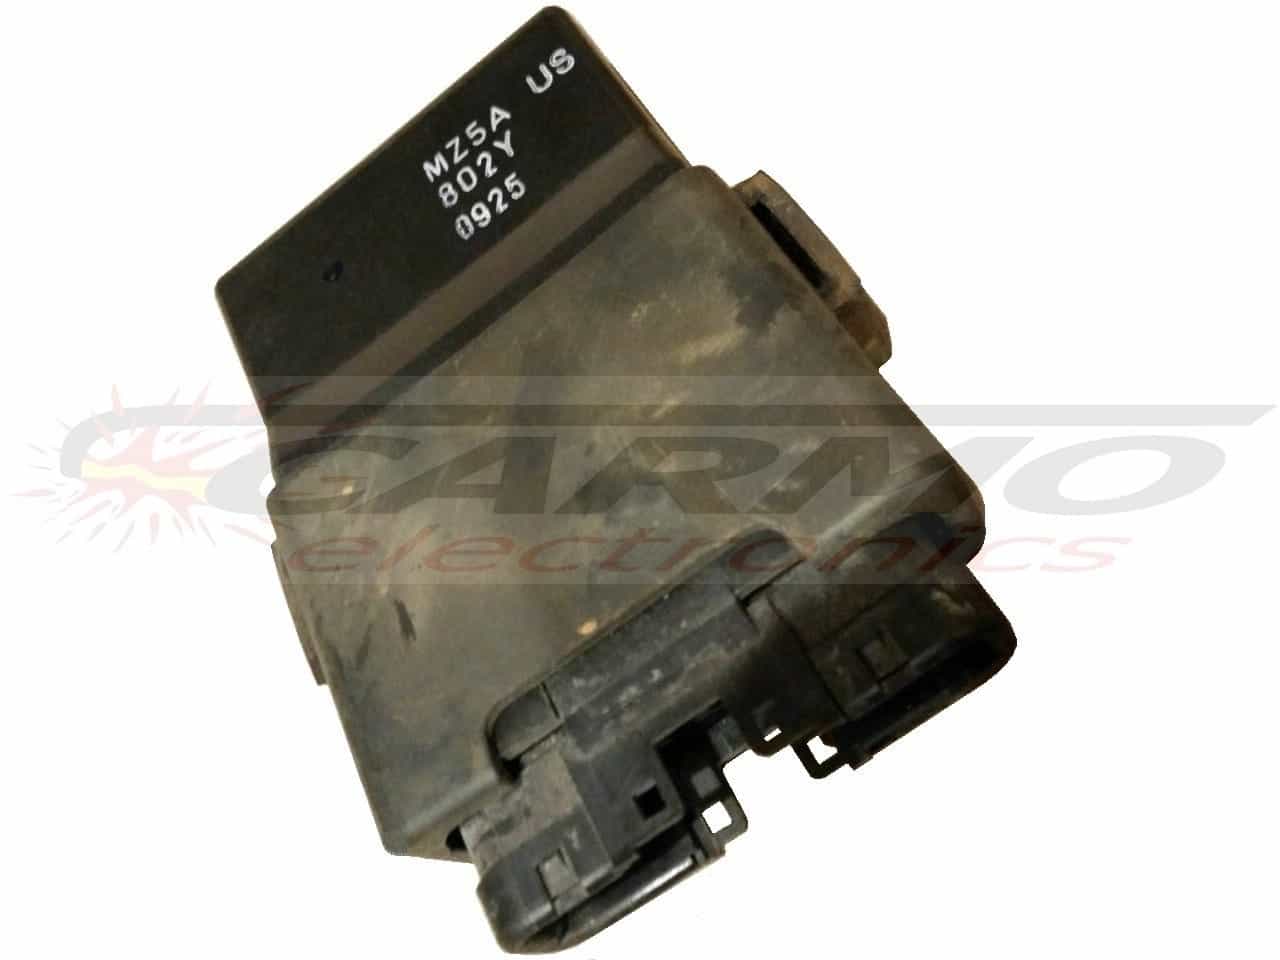 VFR750 igniter ignition module TCI CDI Box (MZ5A, 802Y)